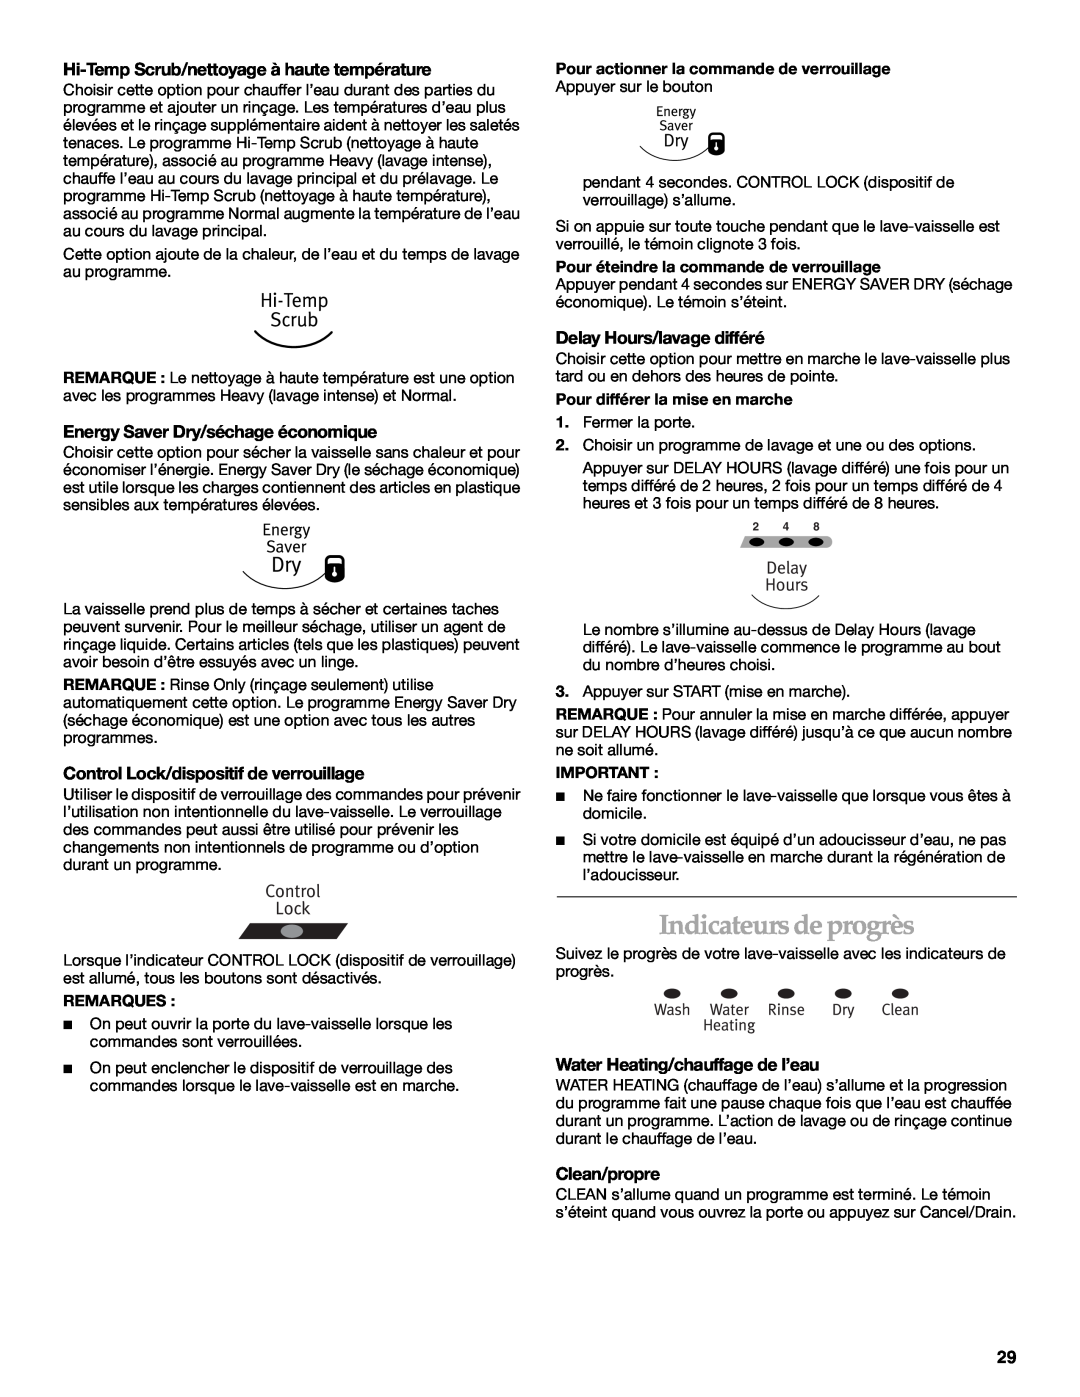 KitchenAid KUDM01TJ manual Indicateurs de progrès, Hi-Temp Scrub/nettoyage à haute température, Delay Hours/lavage différé 